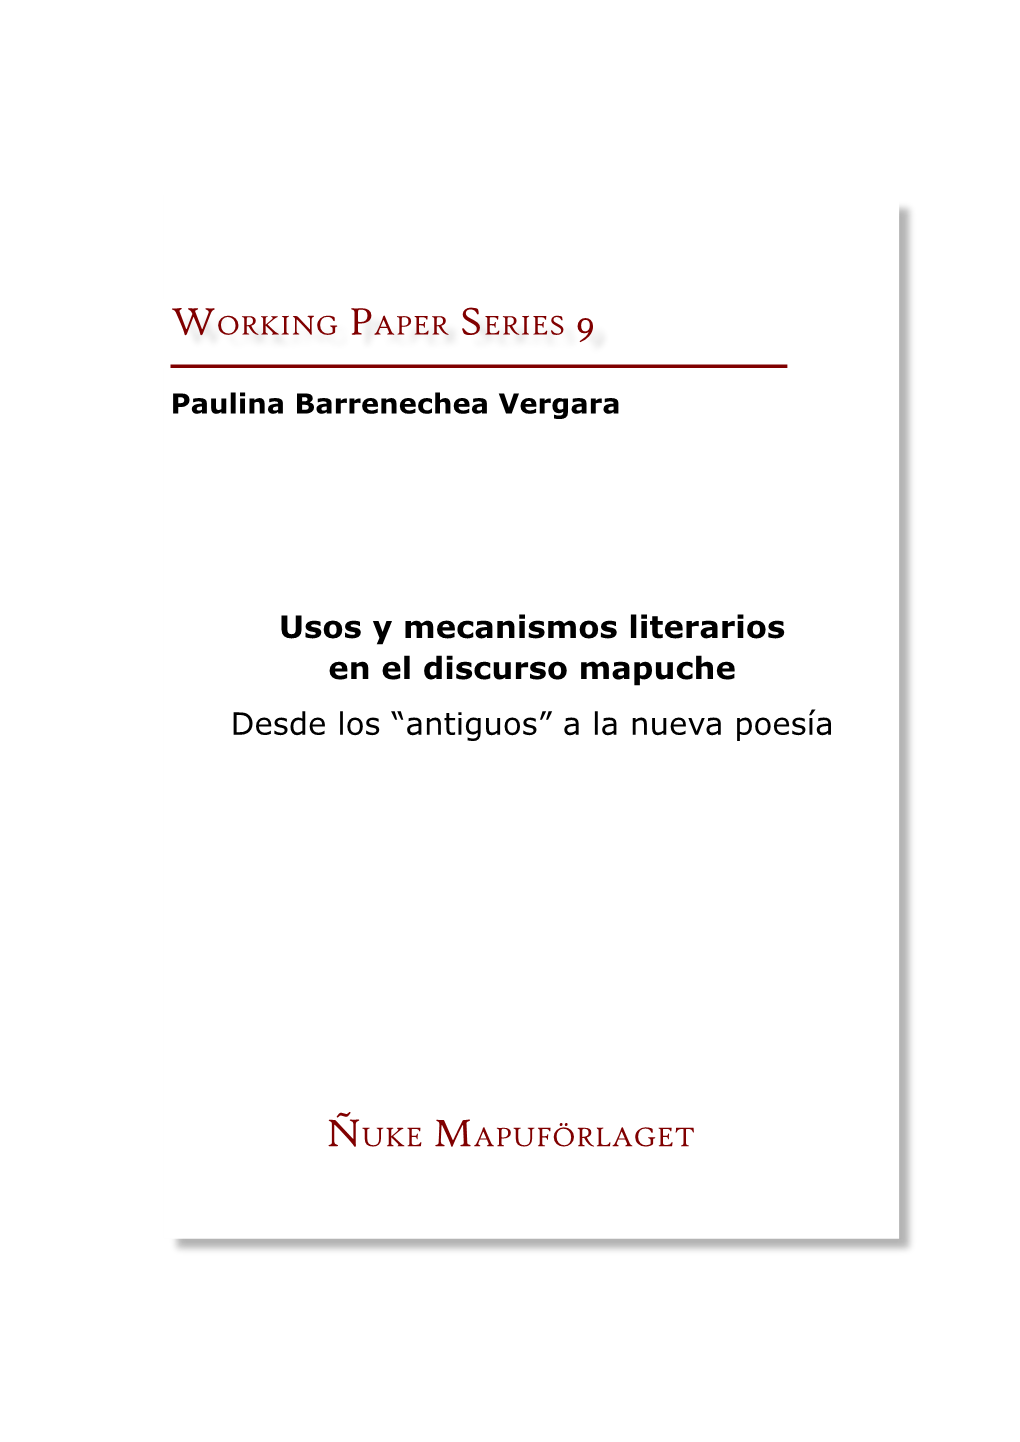 Usos Y Mecanismos Literarios En El Discurso Mapuche Desde Los “Antiguos” a La Nueva Poesía